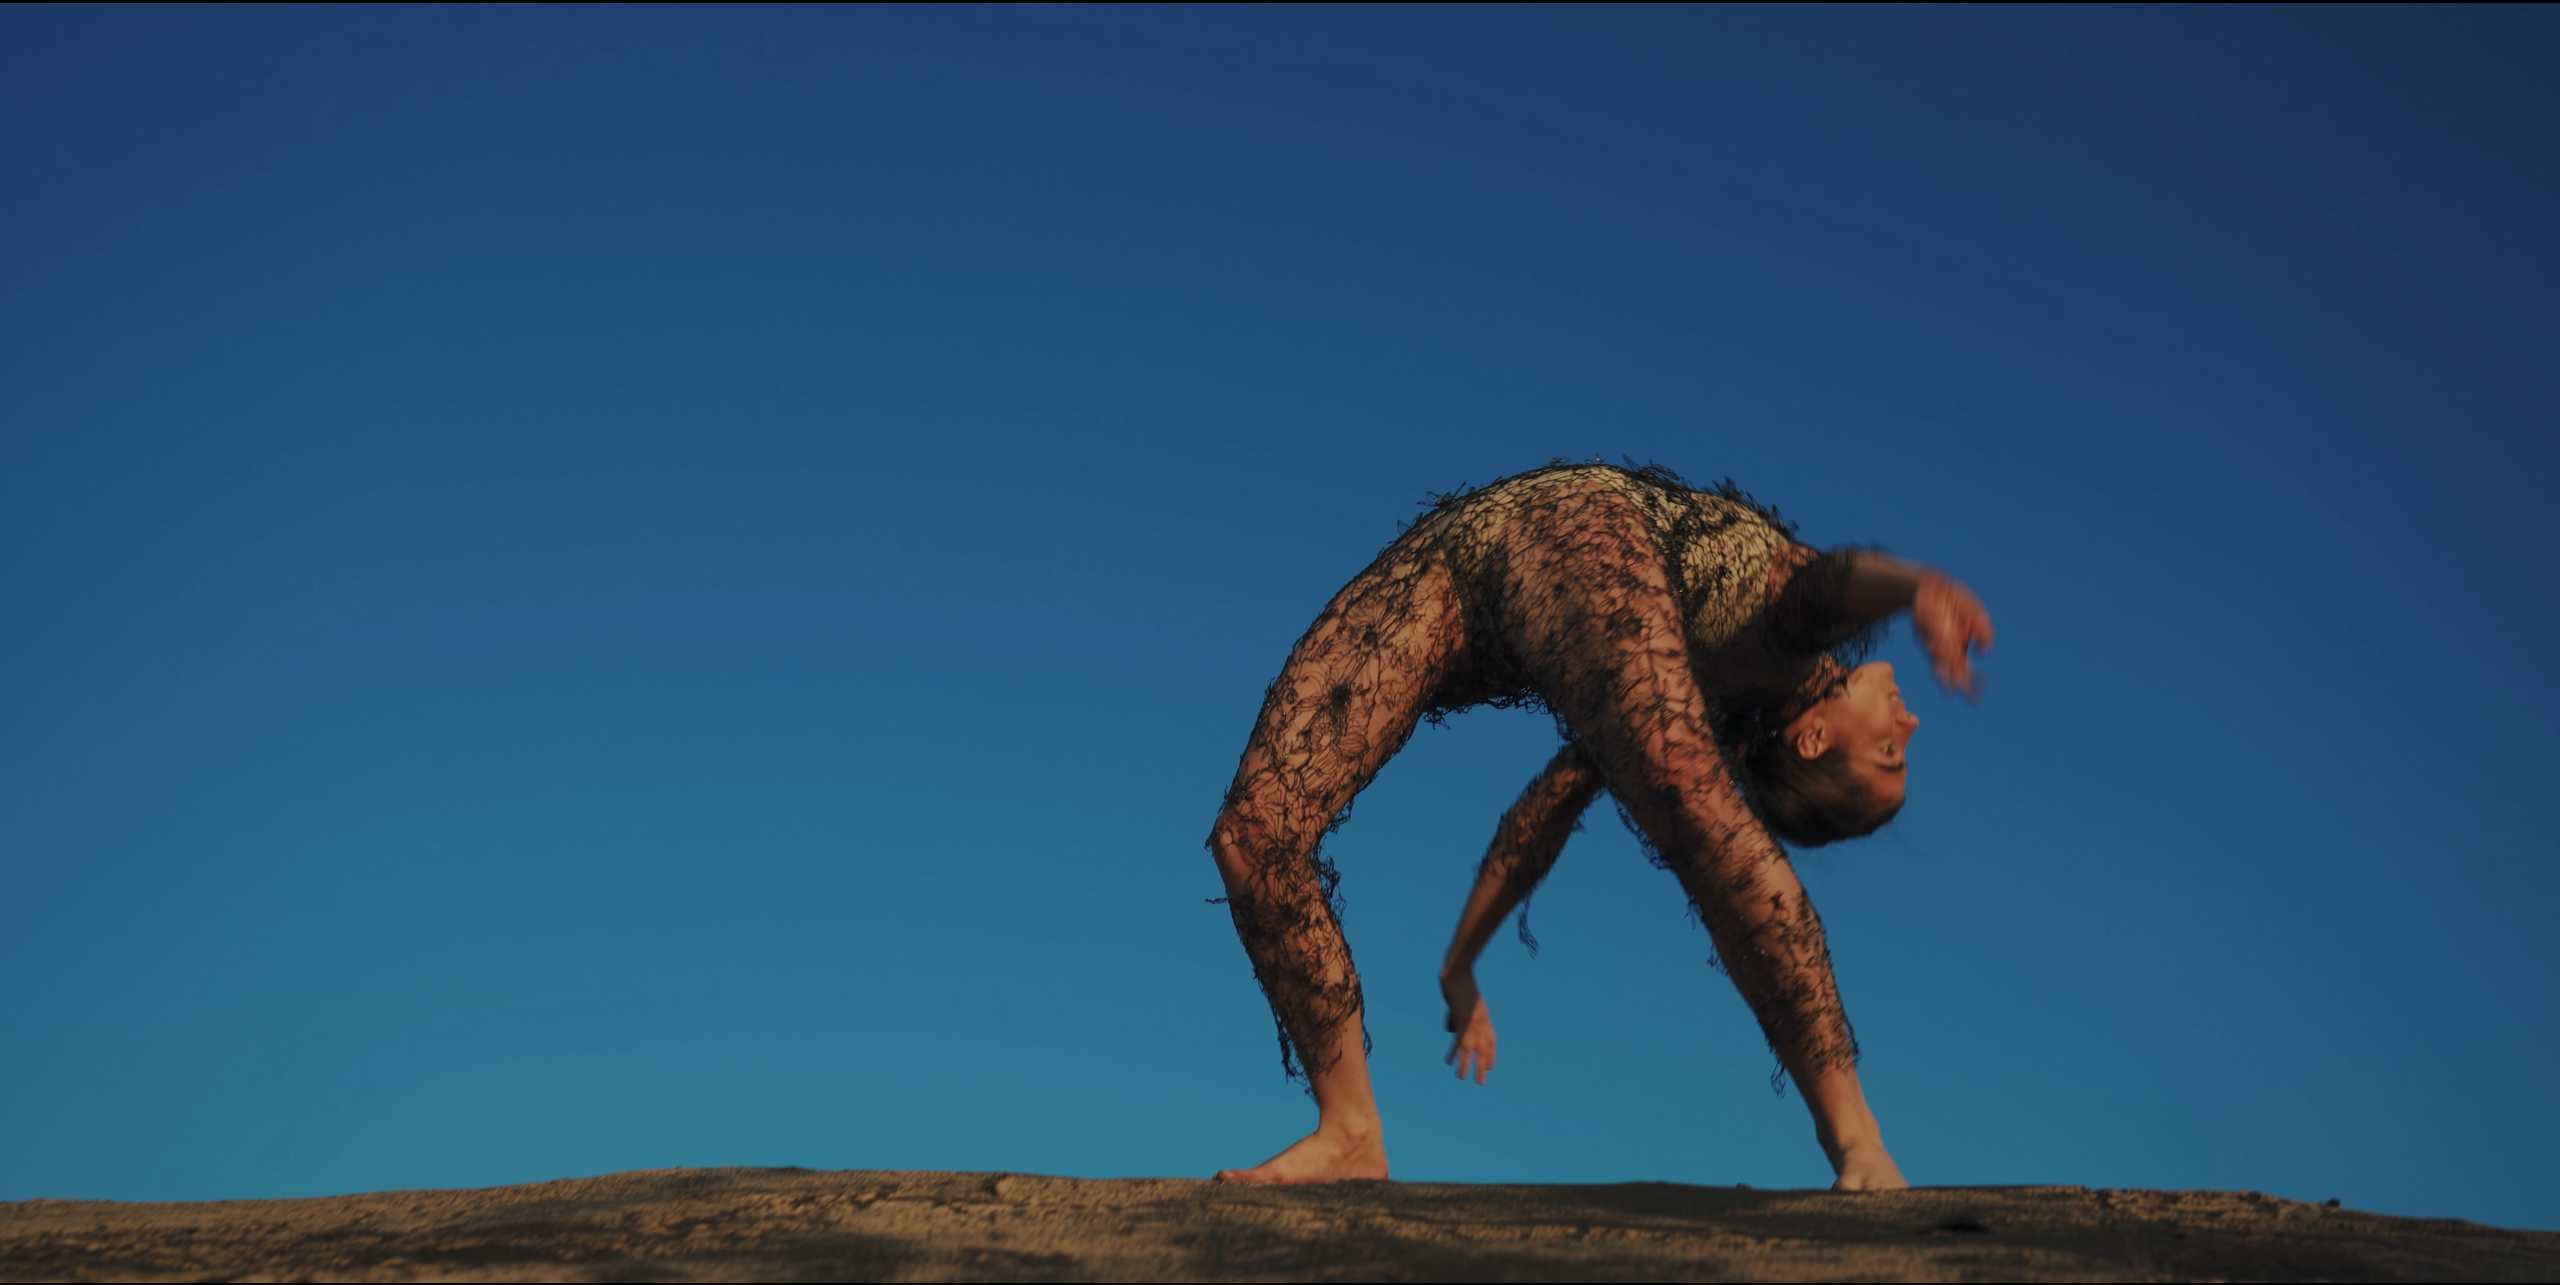 אמנית עדן סעדון רקדנית מיכל רוטמן צילום ליאור מילול רז